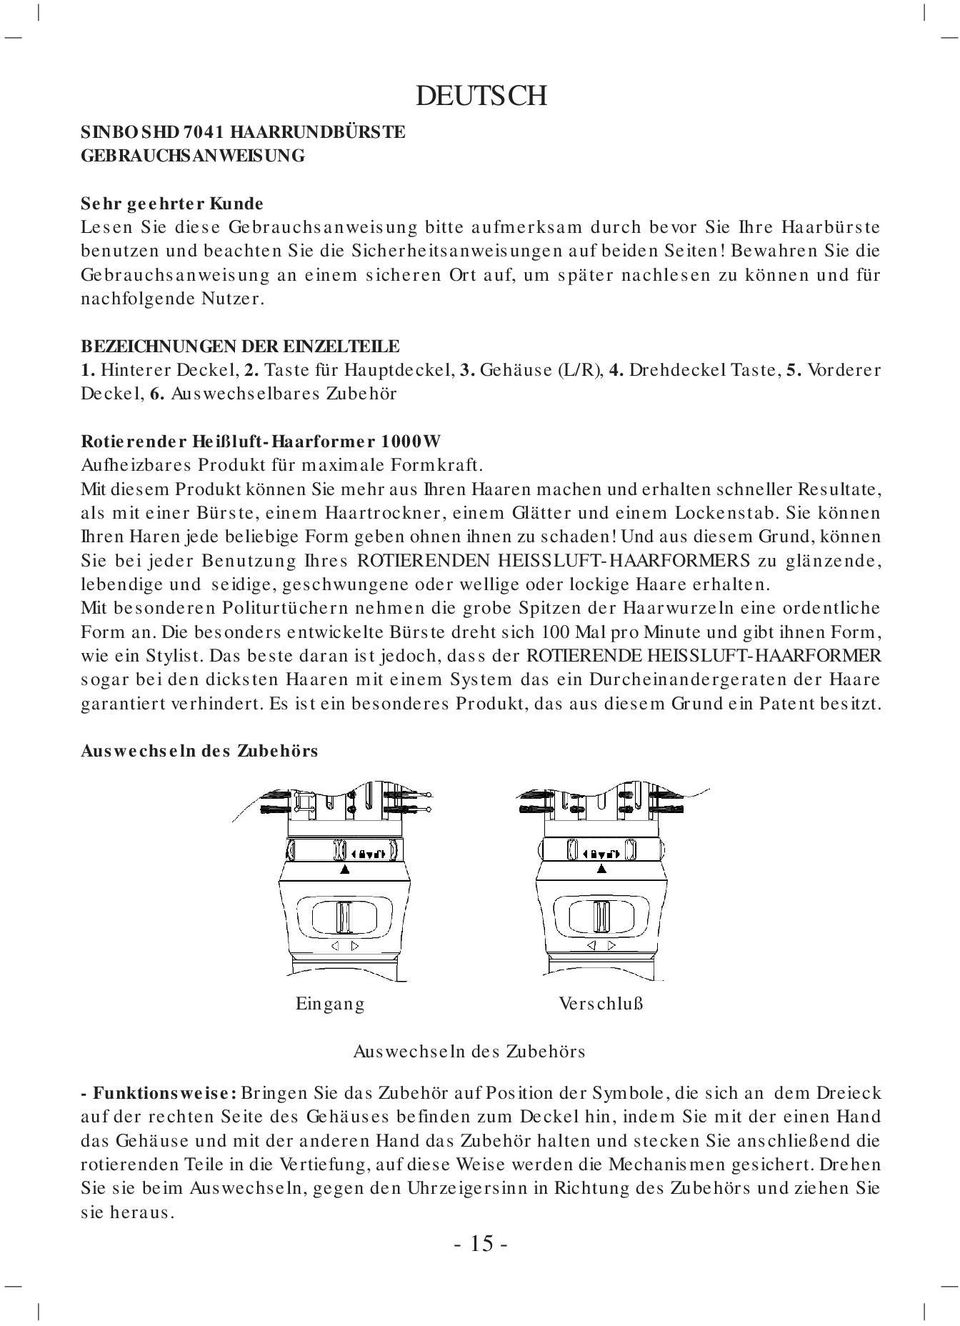 Hinterer Deckel, 2. Taste für Hauptdeckel, 3. Gehäuse (L/R), 4. Drehdeckel Taste, 5. Vorderer Deckel, 6.